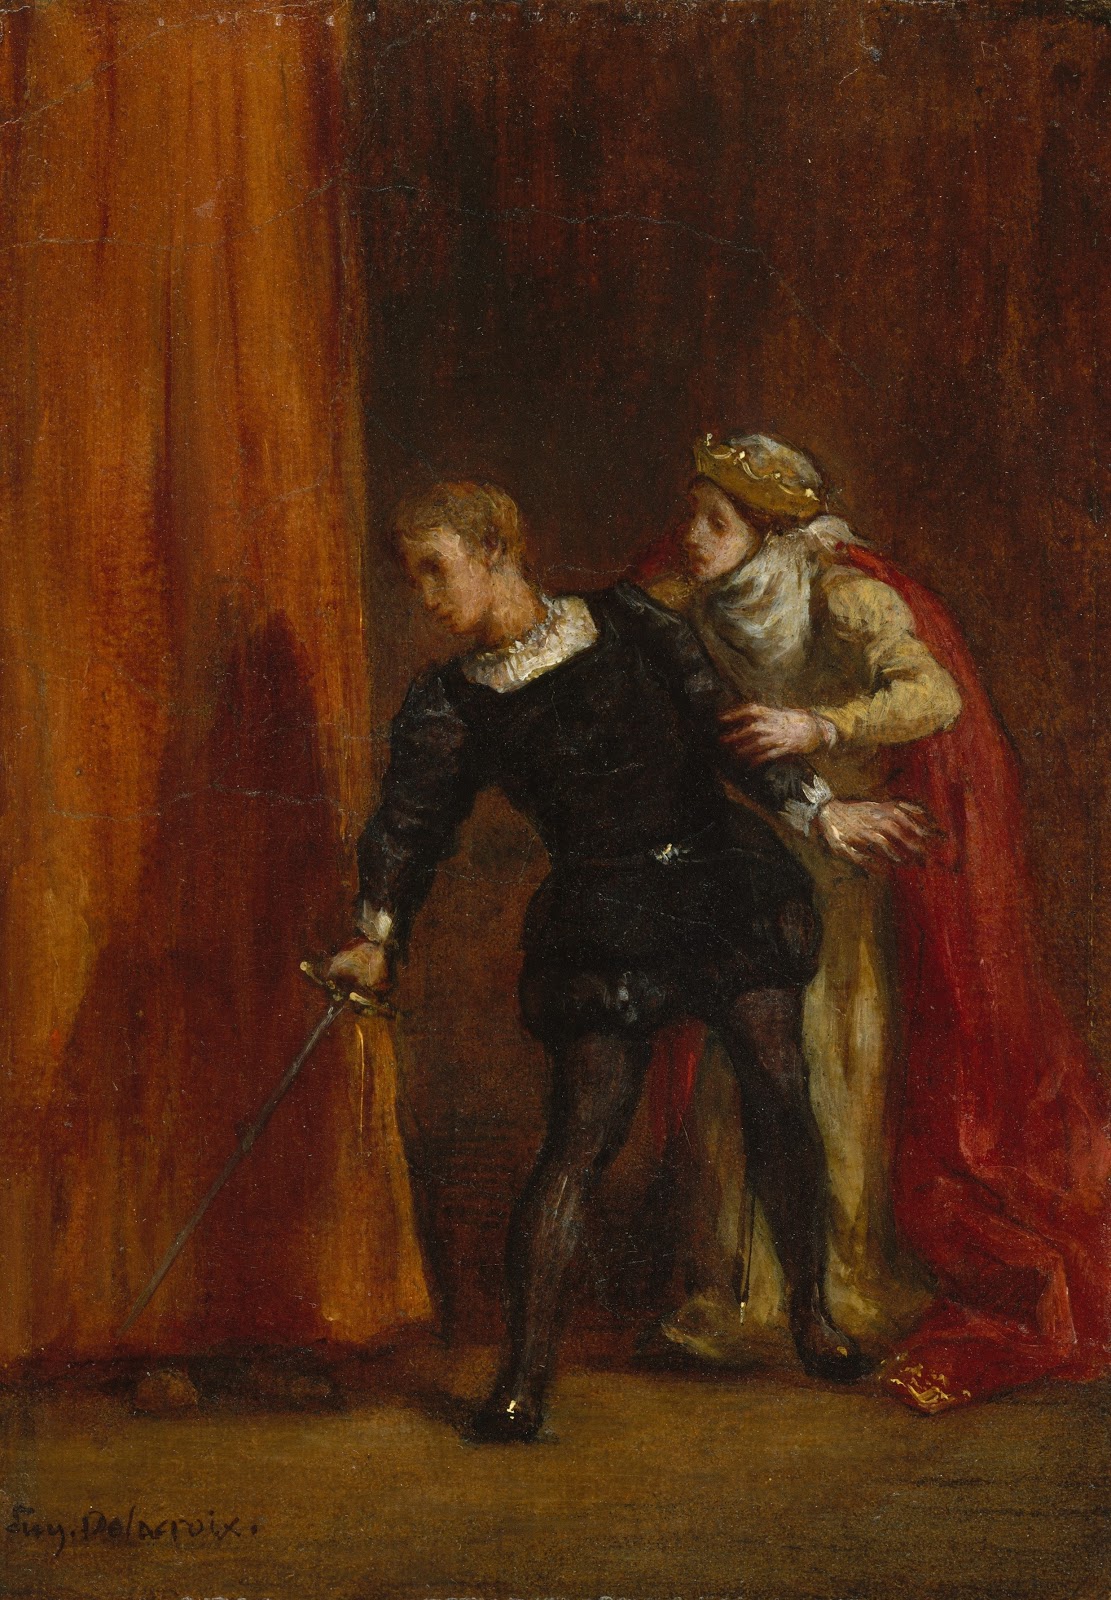 Eugene+Delacroix-1798-1863 (126).jpg